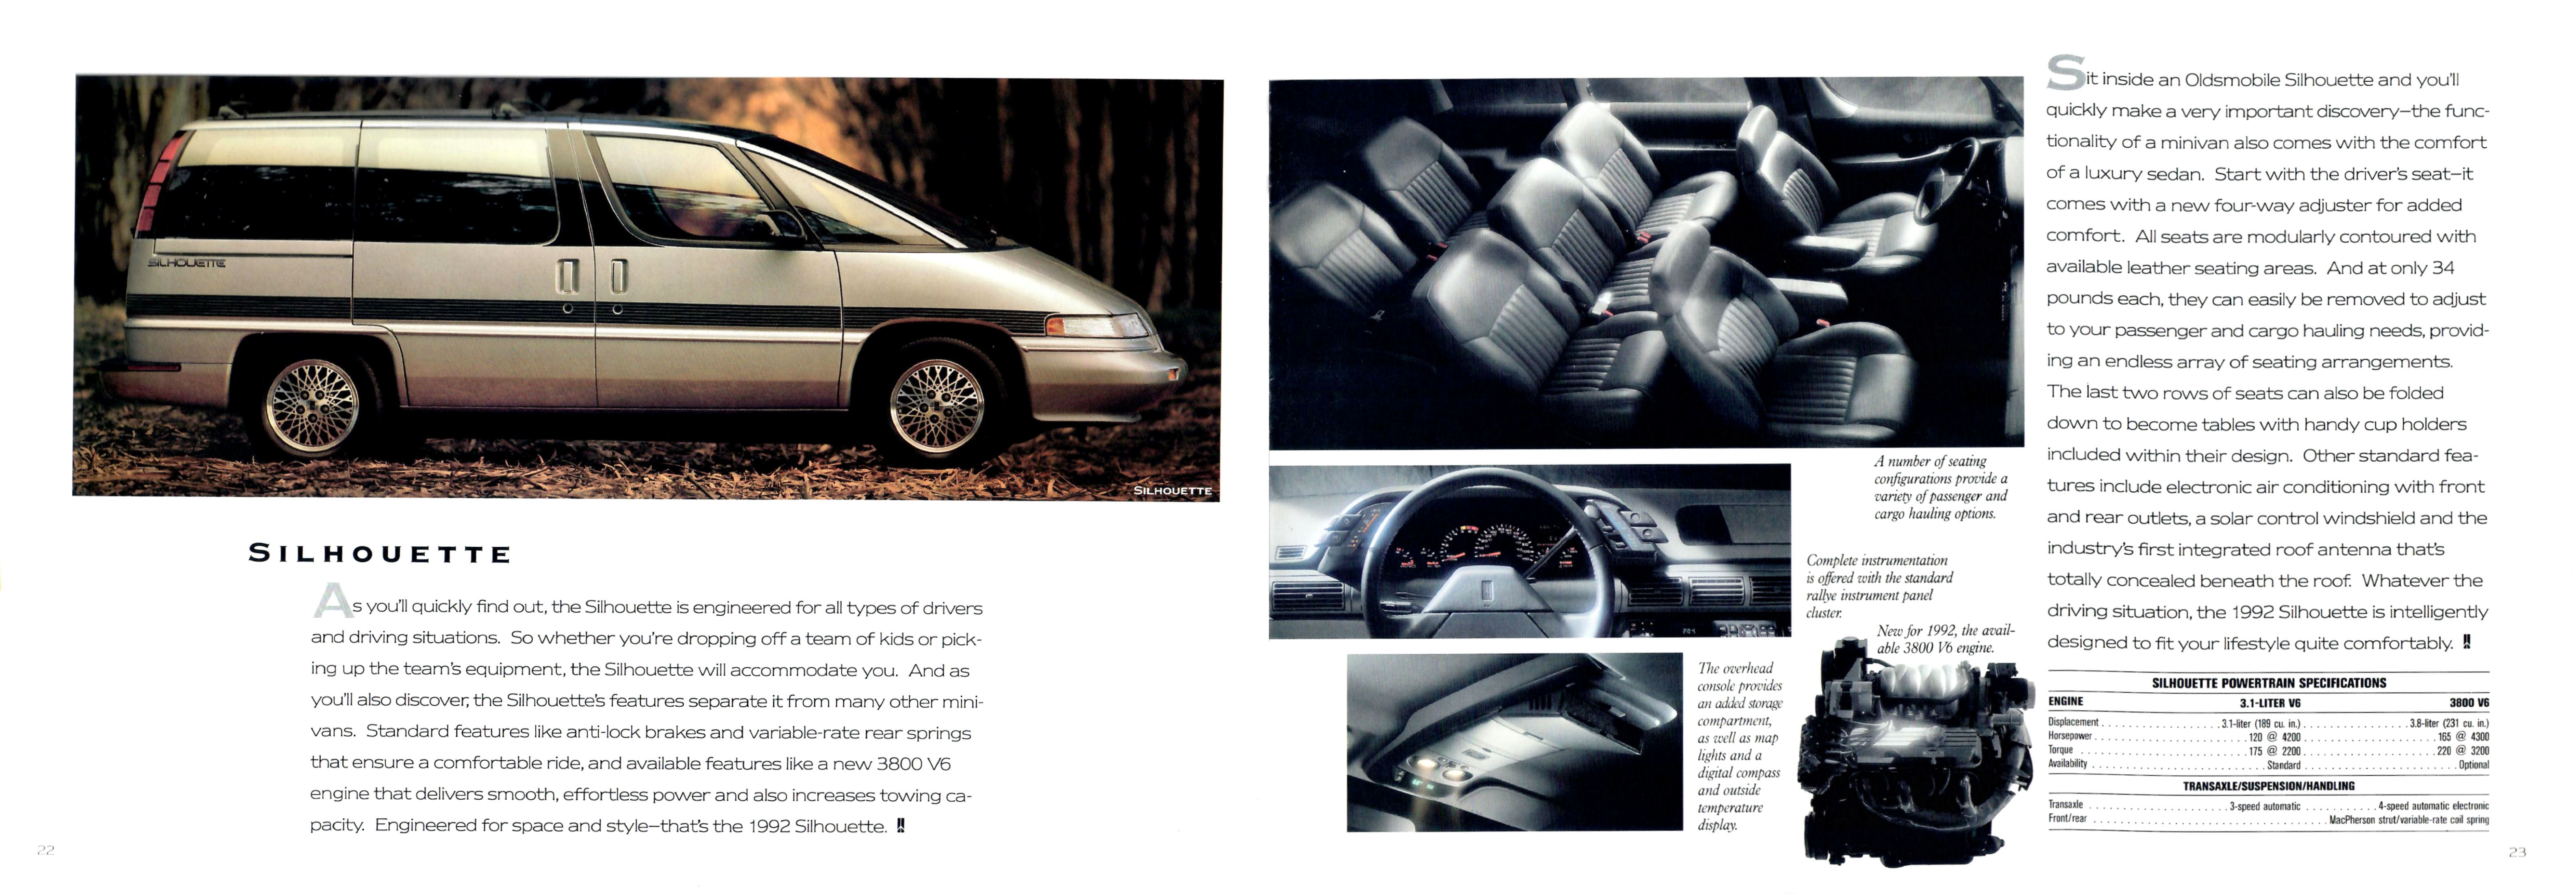 1992 Oldsmobile Full Line-22-23